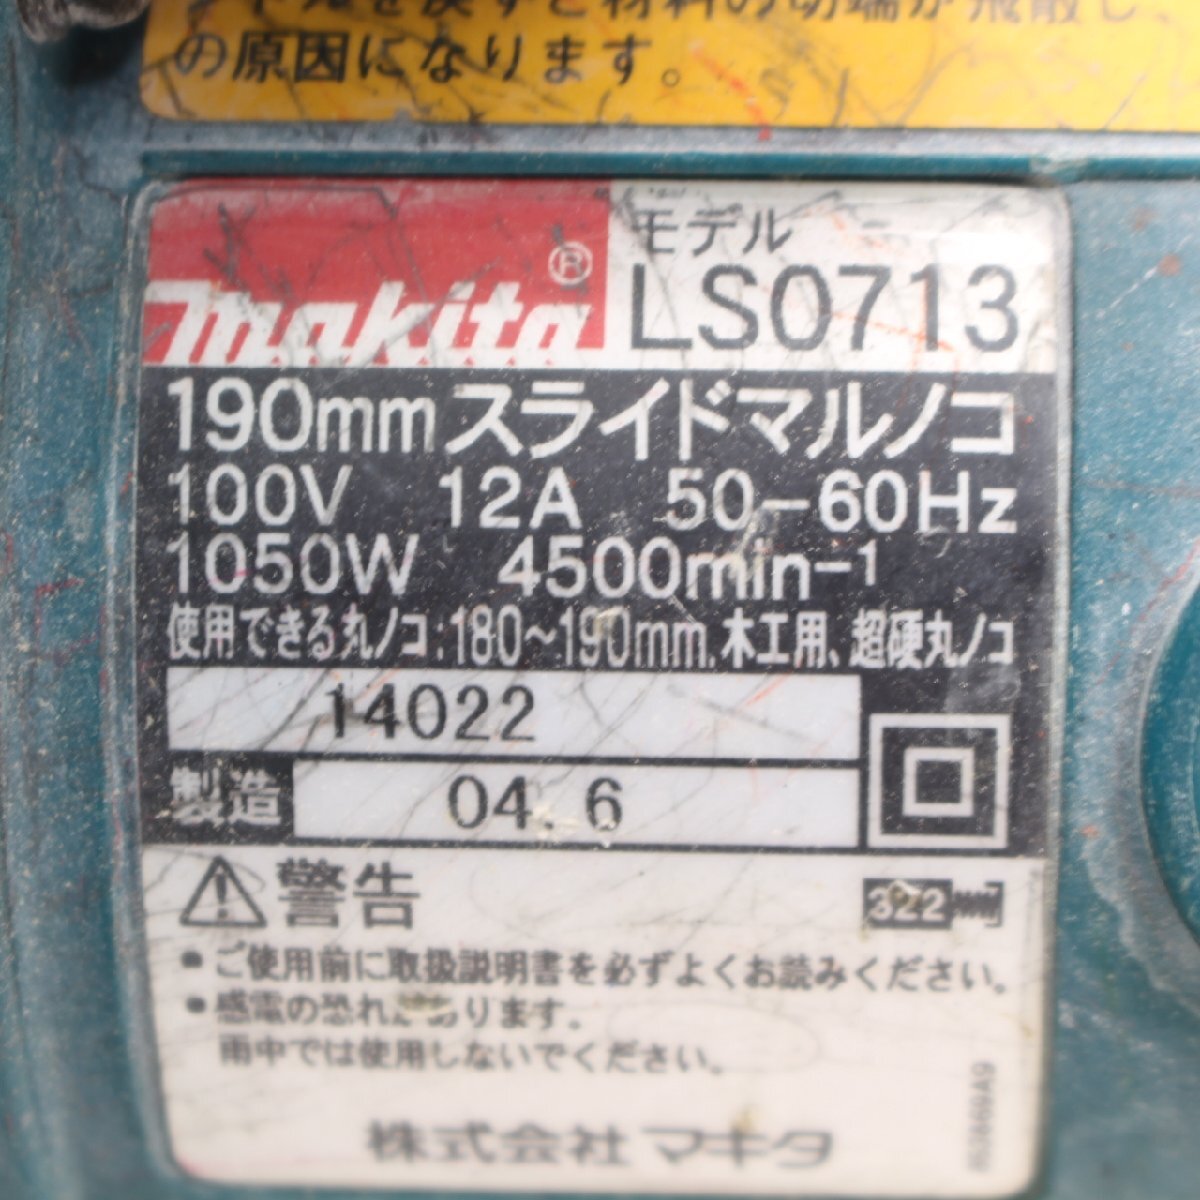 323)マキタ 卓上スライド丸ノコ LS0713 190mm_画像4